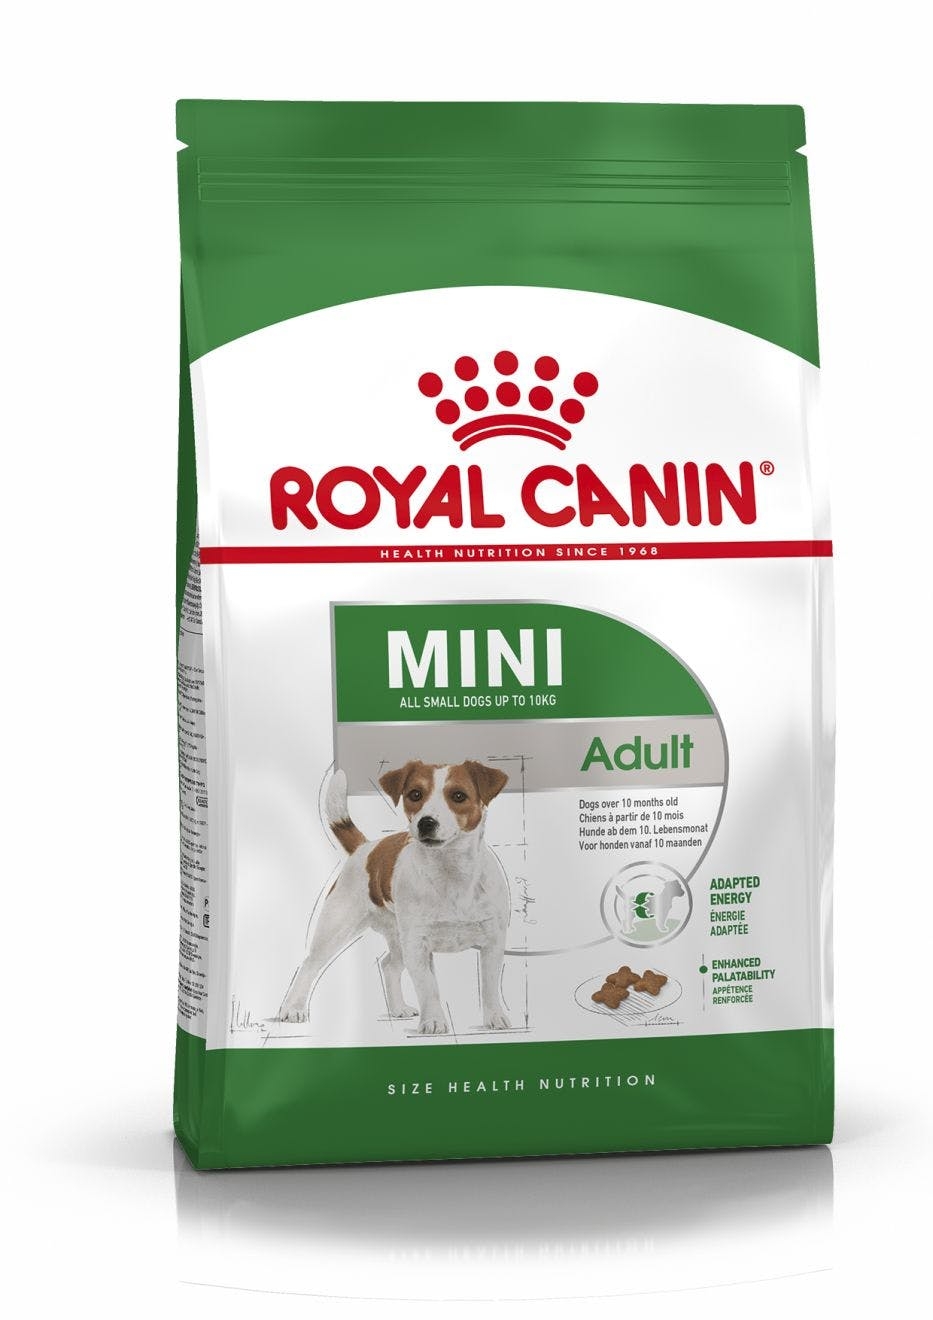 Billede af Royal Canin Mini Adult 1-10 kg. Voksen og Moden. Over 10 måneder